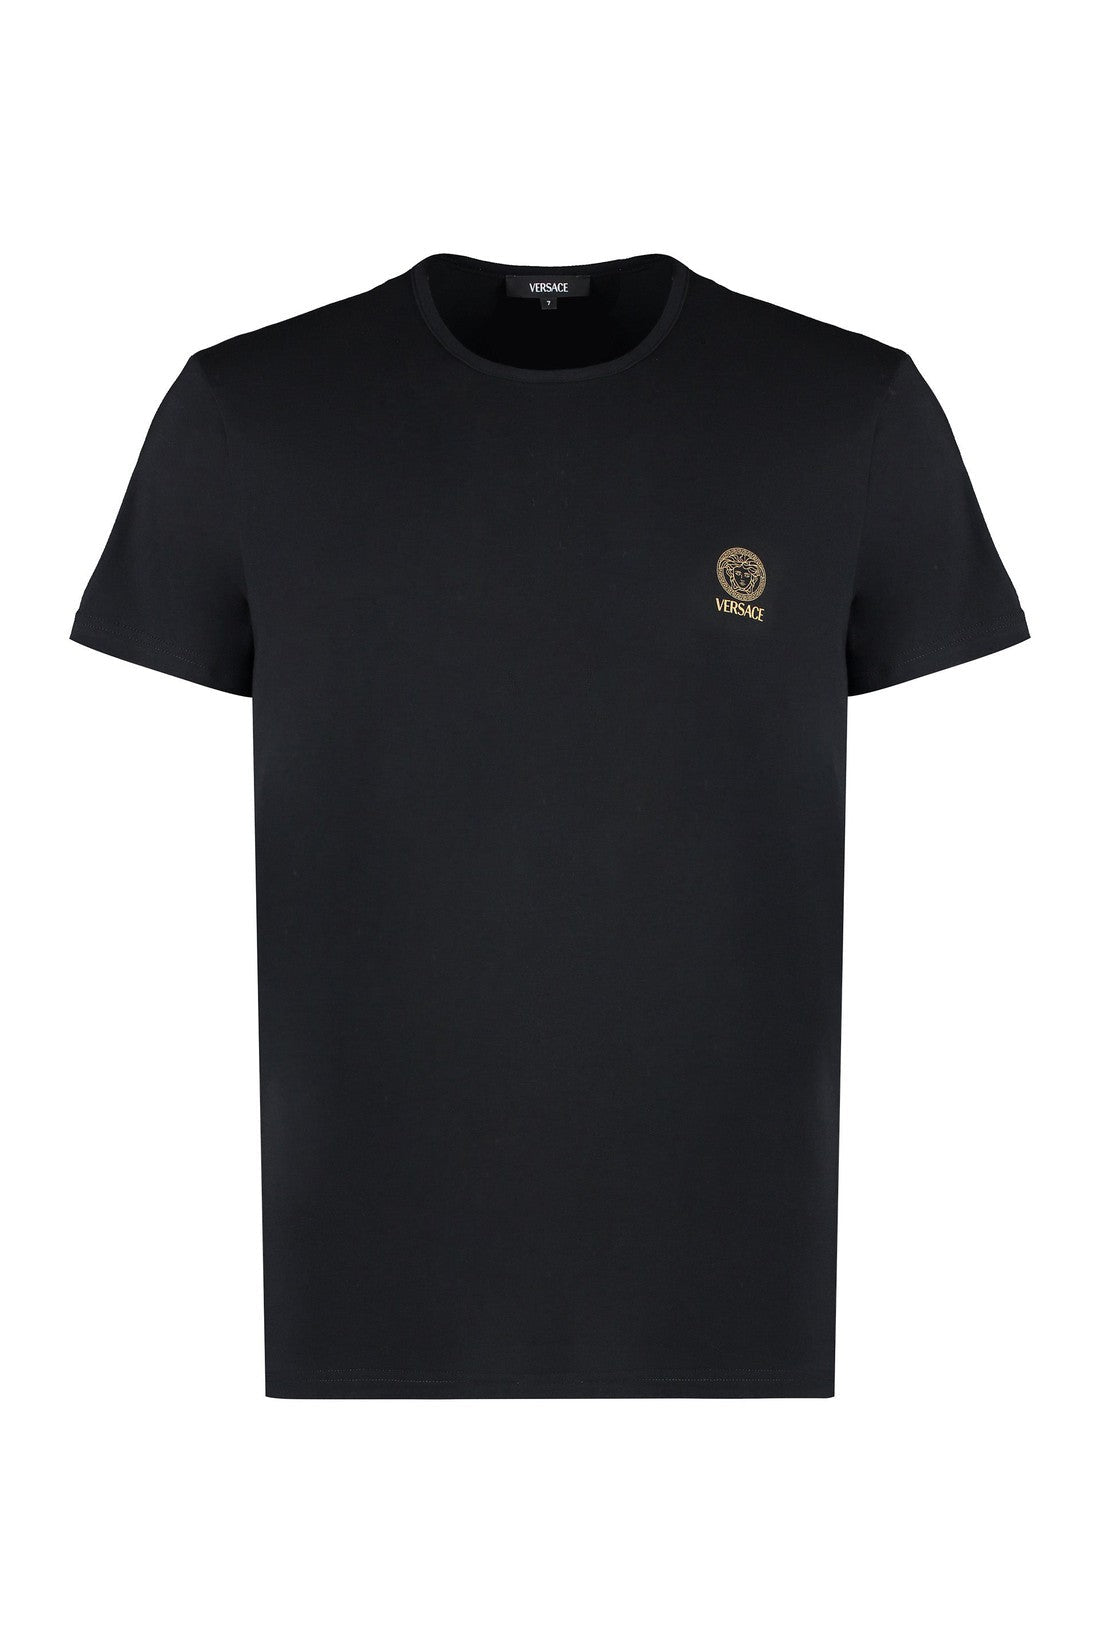 Versace-OUTLET-SALE-Cotton crew-neck T-shirt-ARCHIVIST